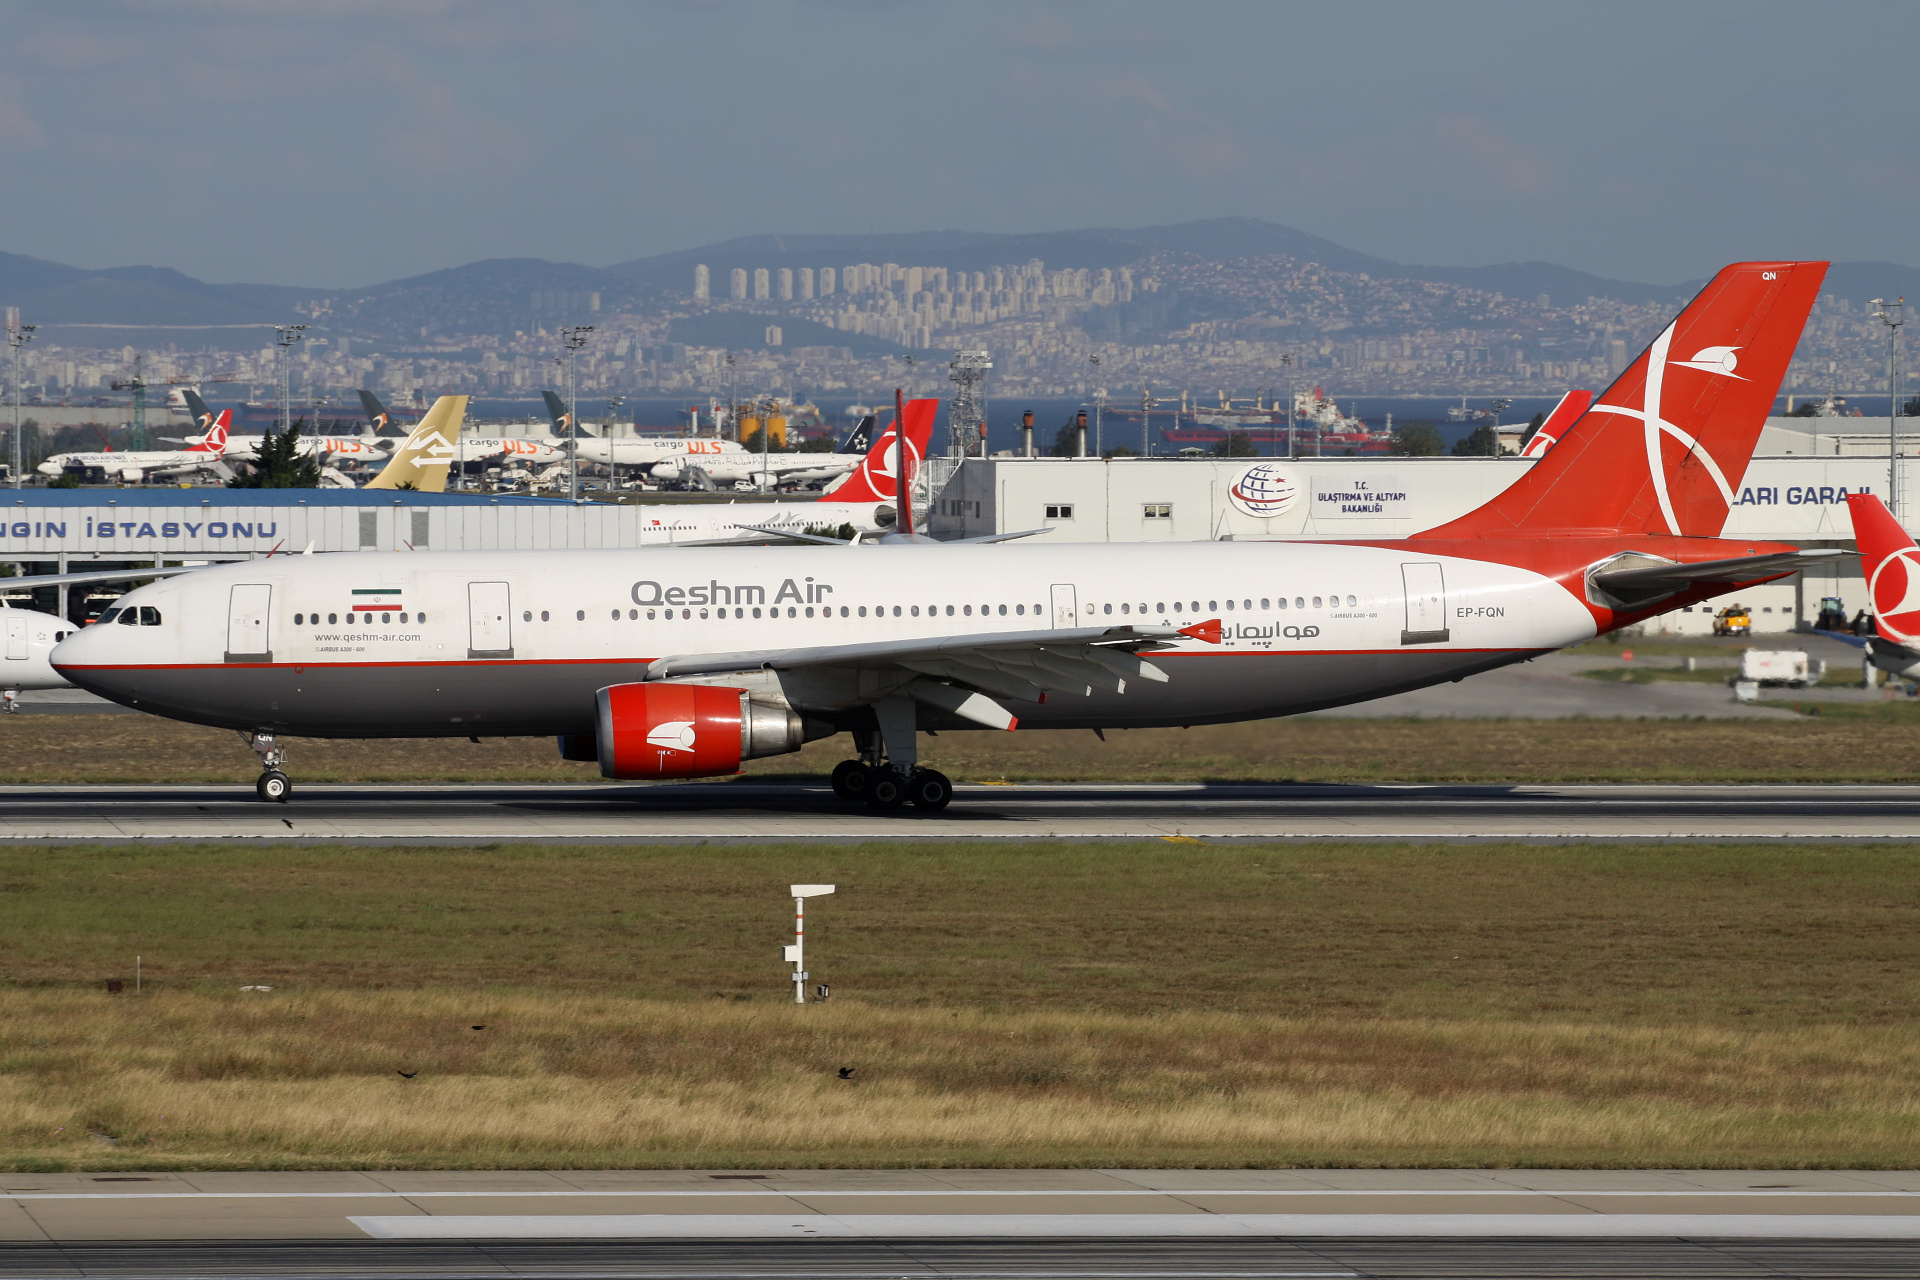 EP-FQN, Qeshm Air (Aircraft » Istanbul Atatürk Airport » Airbus A300B4-600R)